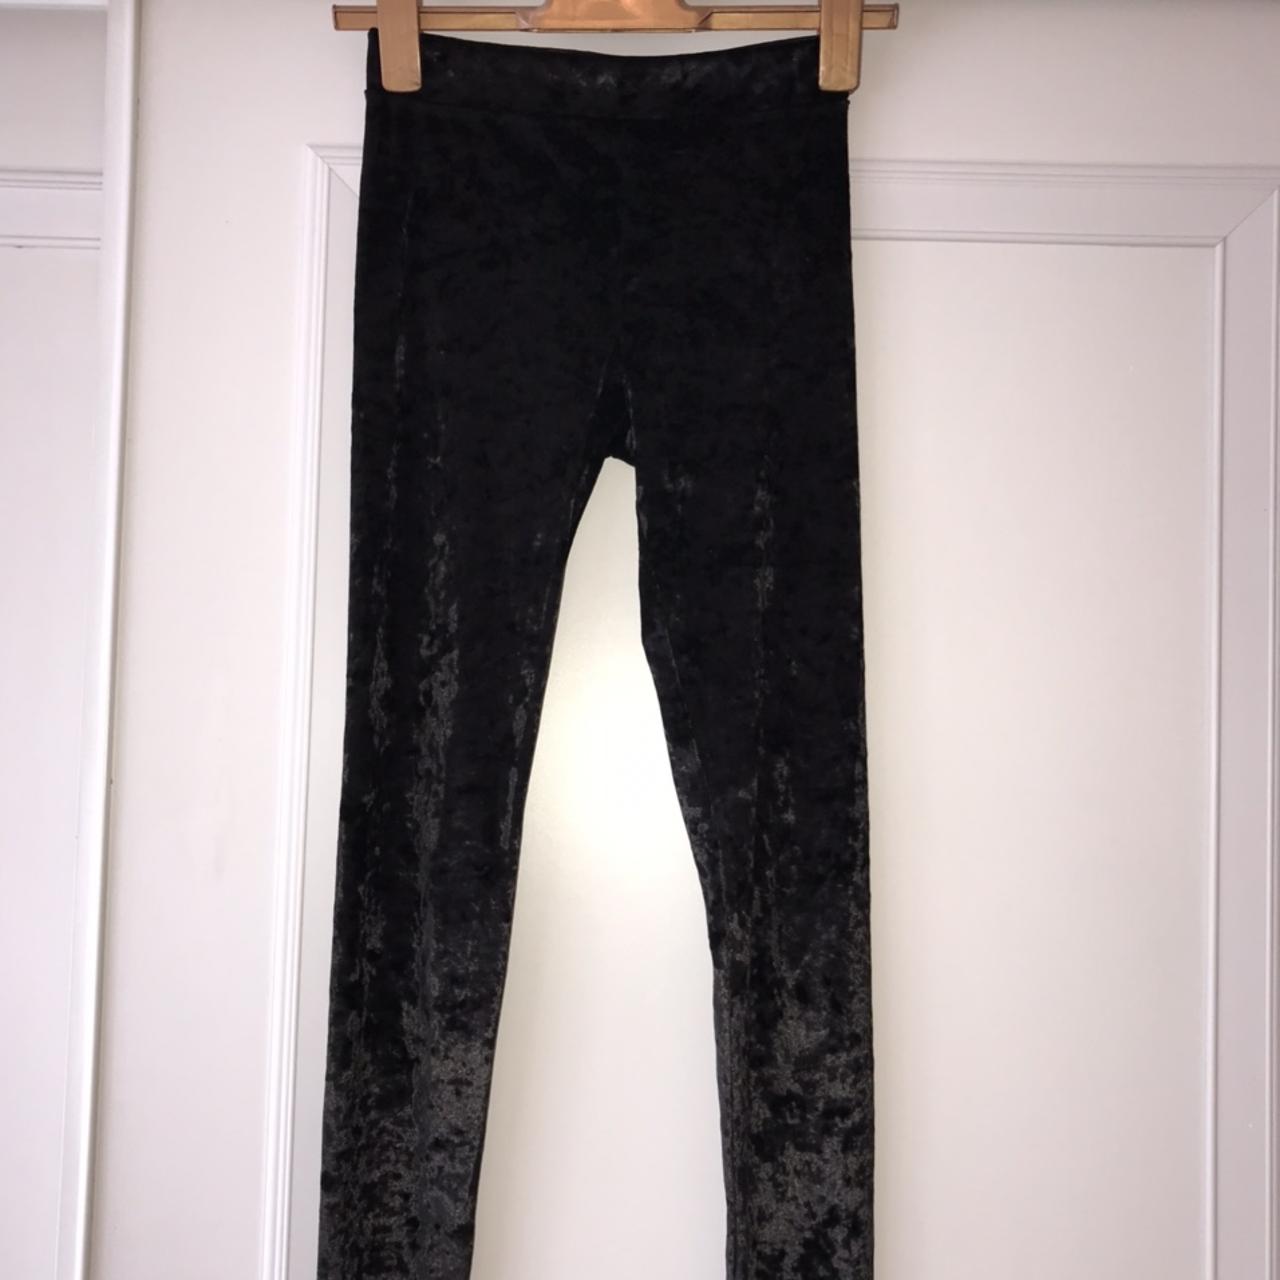 H&M black crushed velvet leggings 🔘 Children’s... - Depop